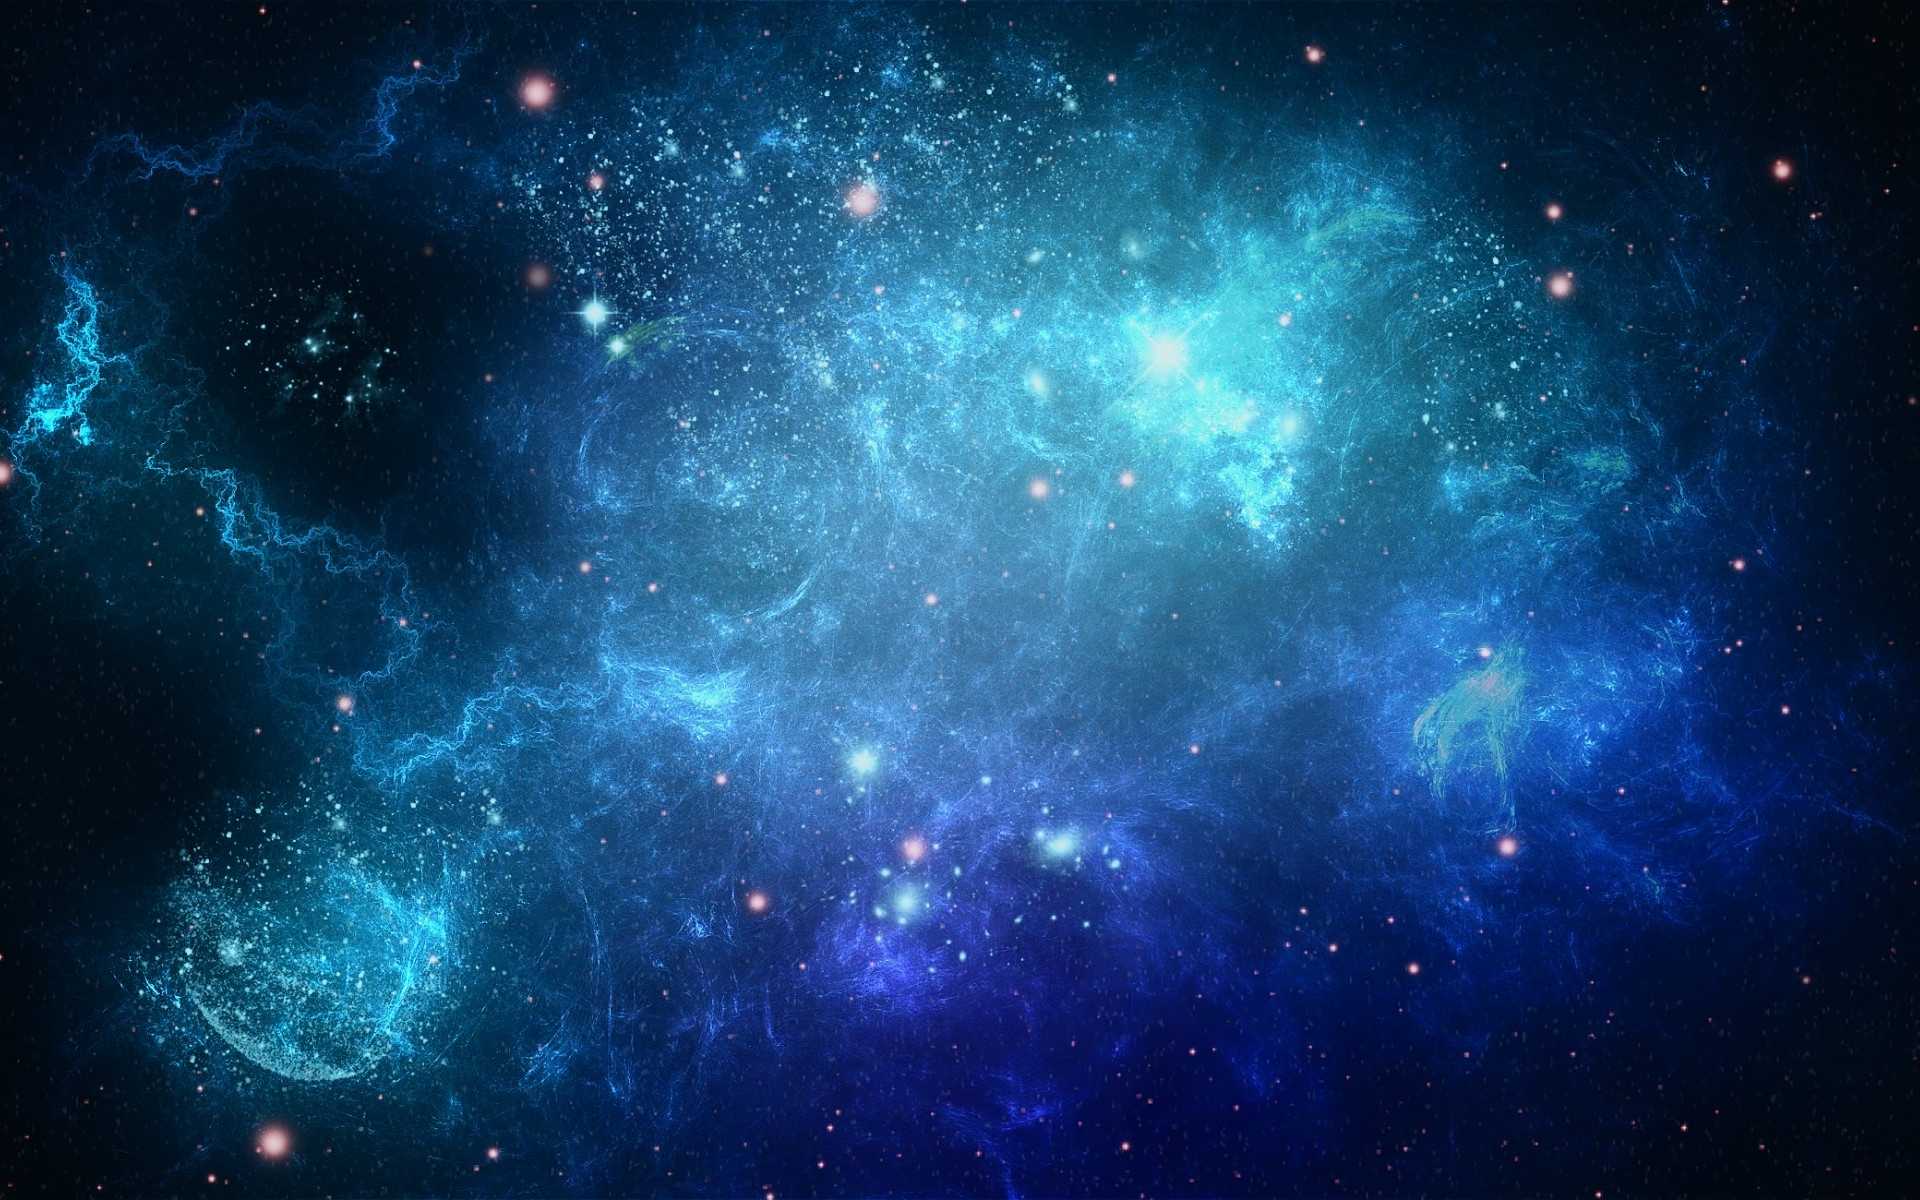 Bức tranh nền thiên hà sẽ mang lại cho bạn những cảm xúc lạ thường khi nhìn lên màn hình máy tính của mình. Các hình ảnh không gian hoành tráng và chăm chút đến từng chi tiết sẽ khiến cho bạn cảm thấy như mình đang sống trong một thế giới hoàn toàn khác biệt. Hãy thưởng thức những ngày tươi đẹp với bức hình nền thiên hà huyền ảo này!